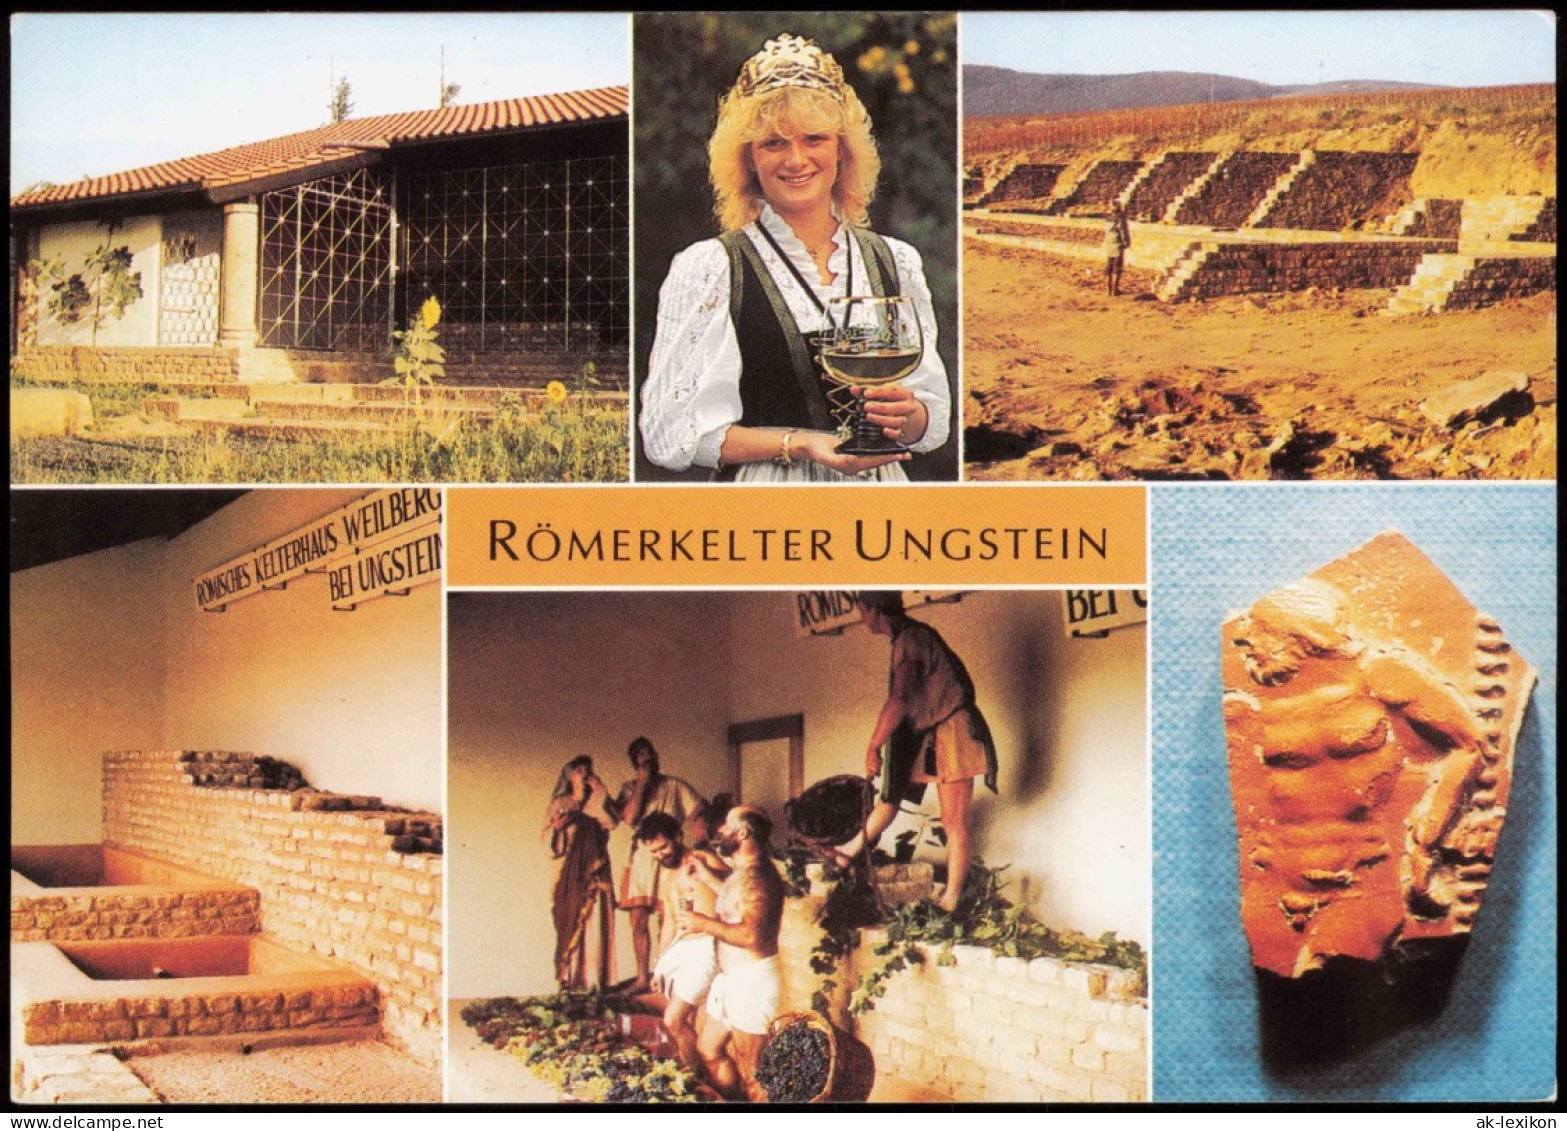 Ungstein-Bad Dürkheim Römerkelter Ungstein Mit Weinkönigin MB 1987 - Bad Dürkheim